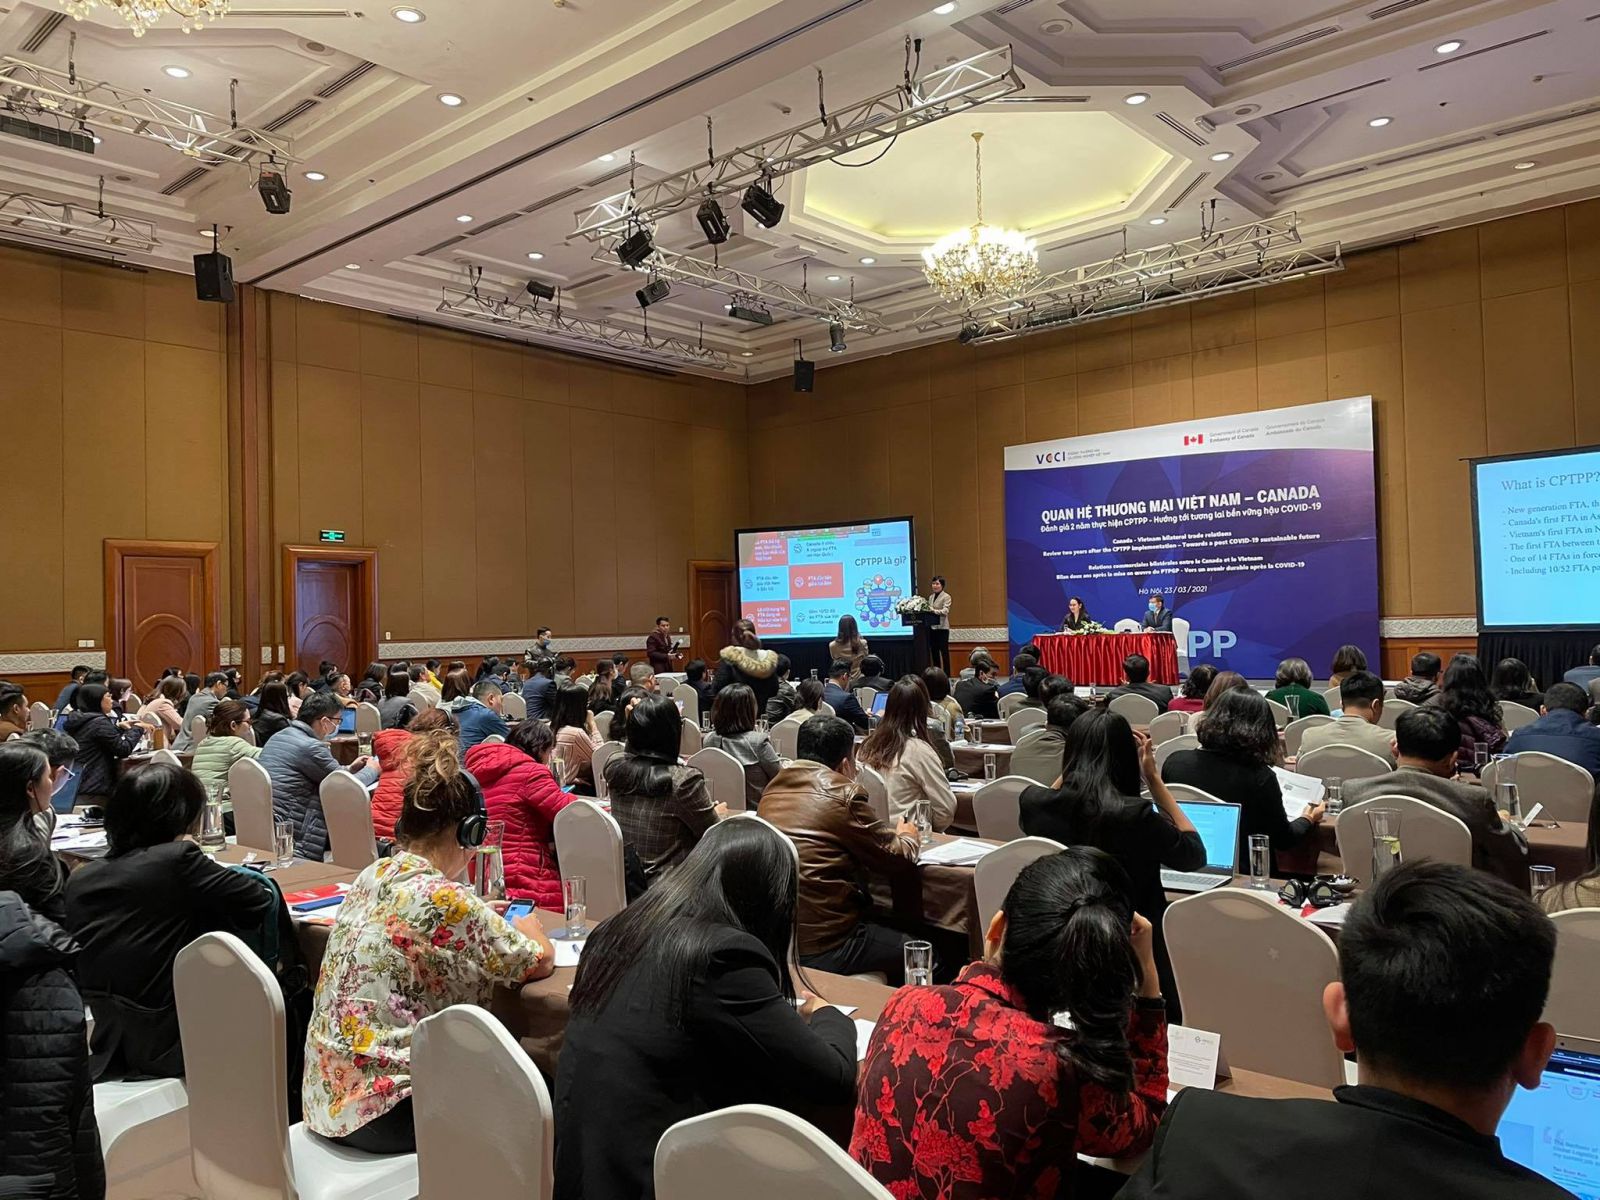 Hiệp định Đối tác Toàn diện và Tiến bộ xuyên Thái Bình Dương và hướng tới tương lai bền vững hậu Covid-19 do Phòng Thương mại và Công nghiệp Việt Nam tổ chức thu hút sự quan tâm đông đảo của cộng đồng doanh nghiệp.